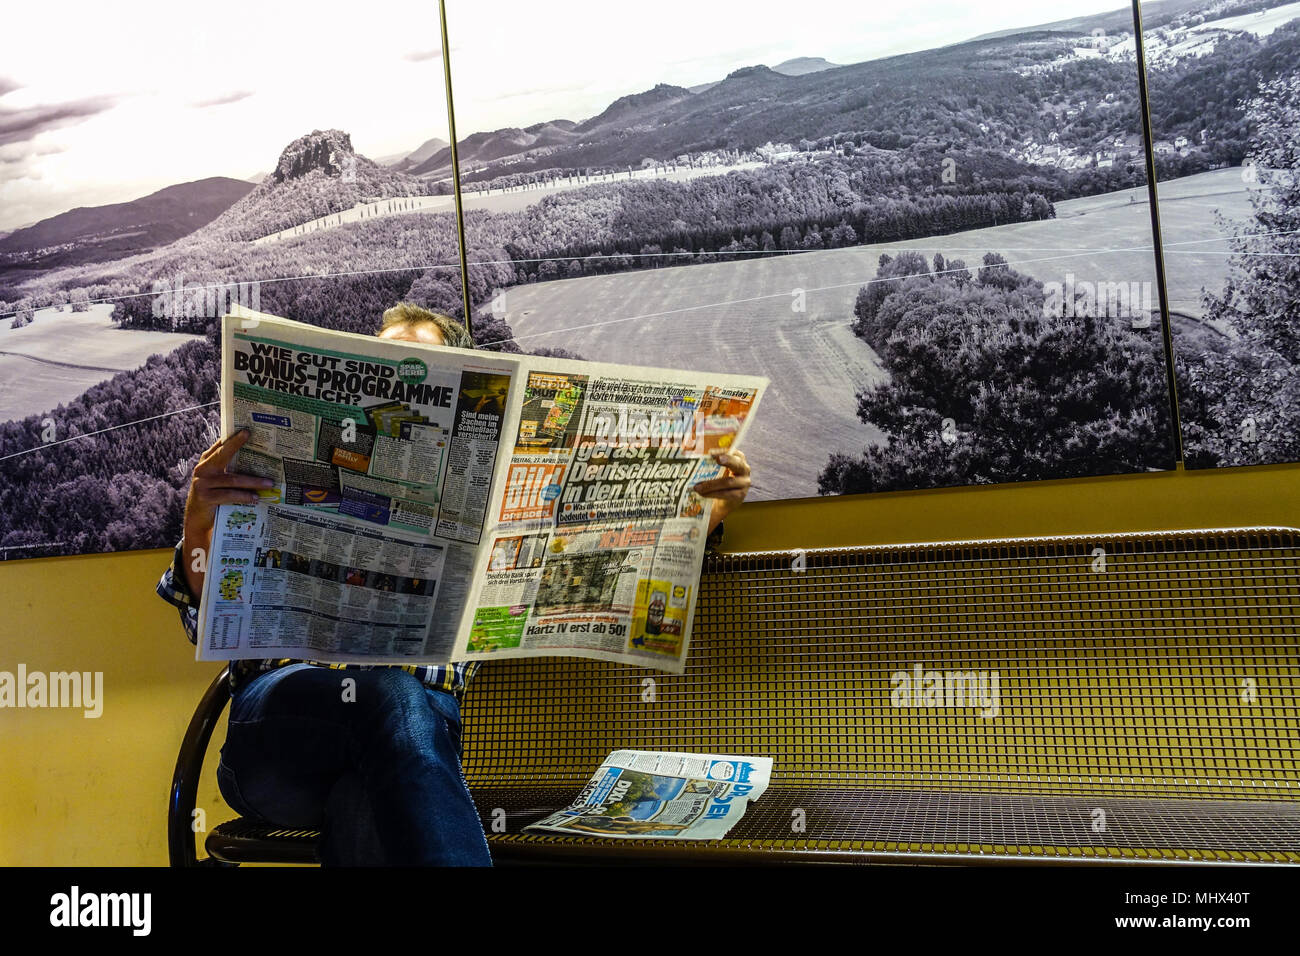 El lector lee el periódico alemán Bild en la estación de ferrocarril, Bad Schandau, foto de fondo el paisaje de la suiza sajona, alemán Foto de stock